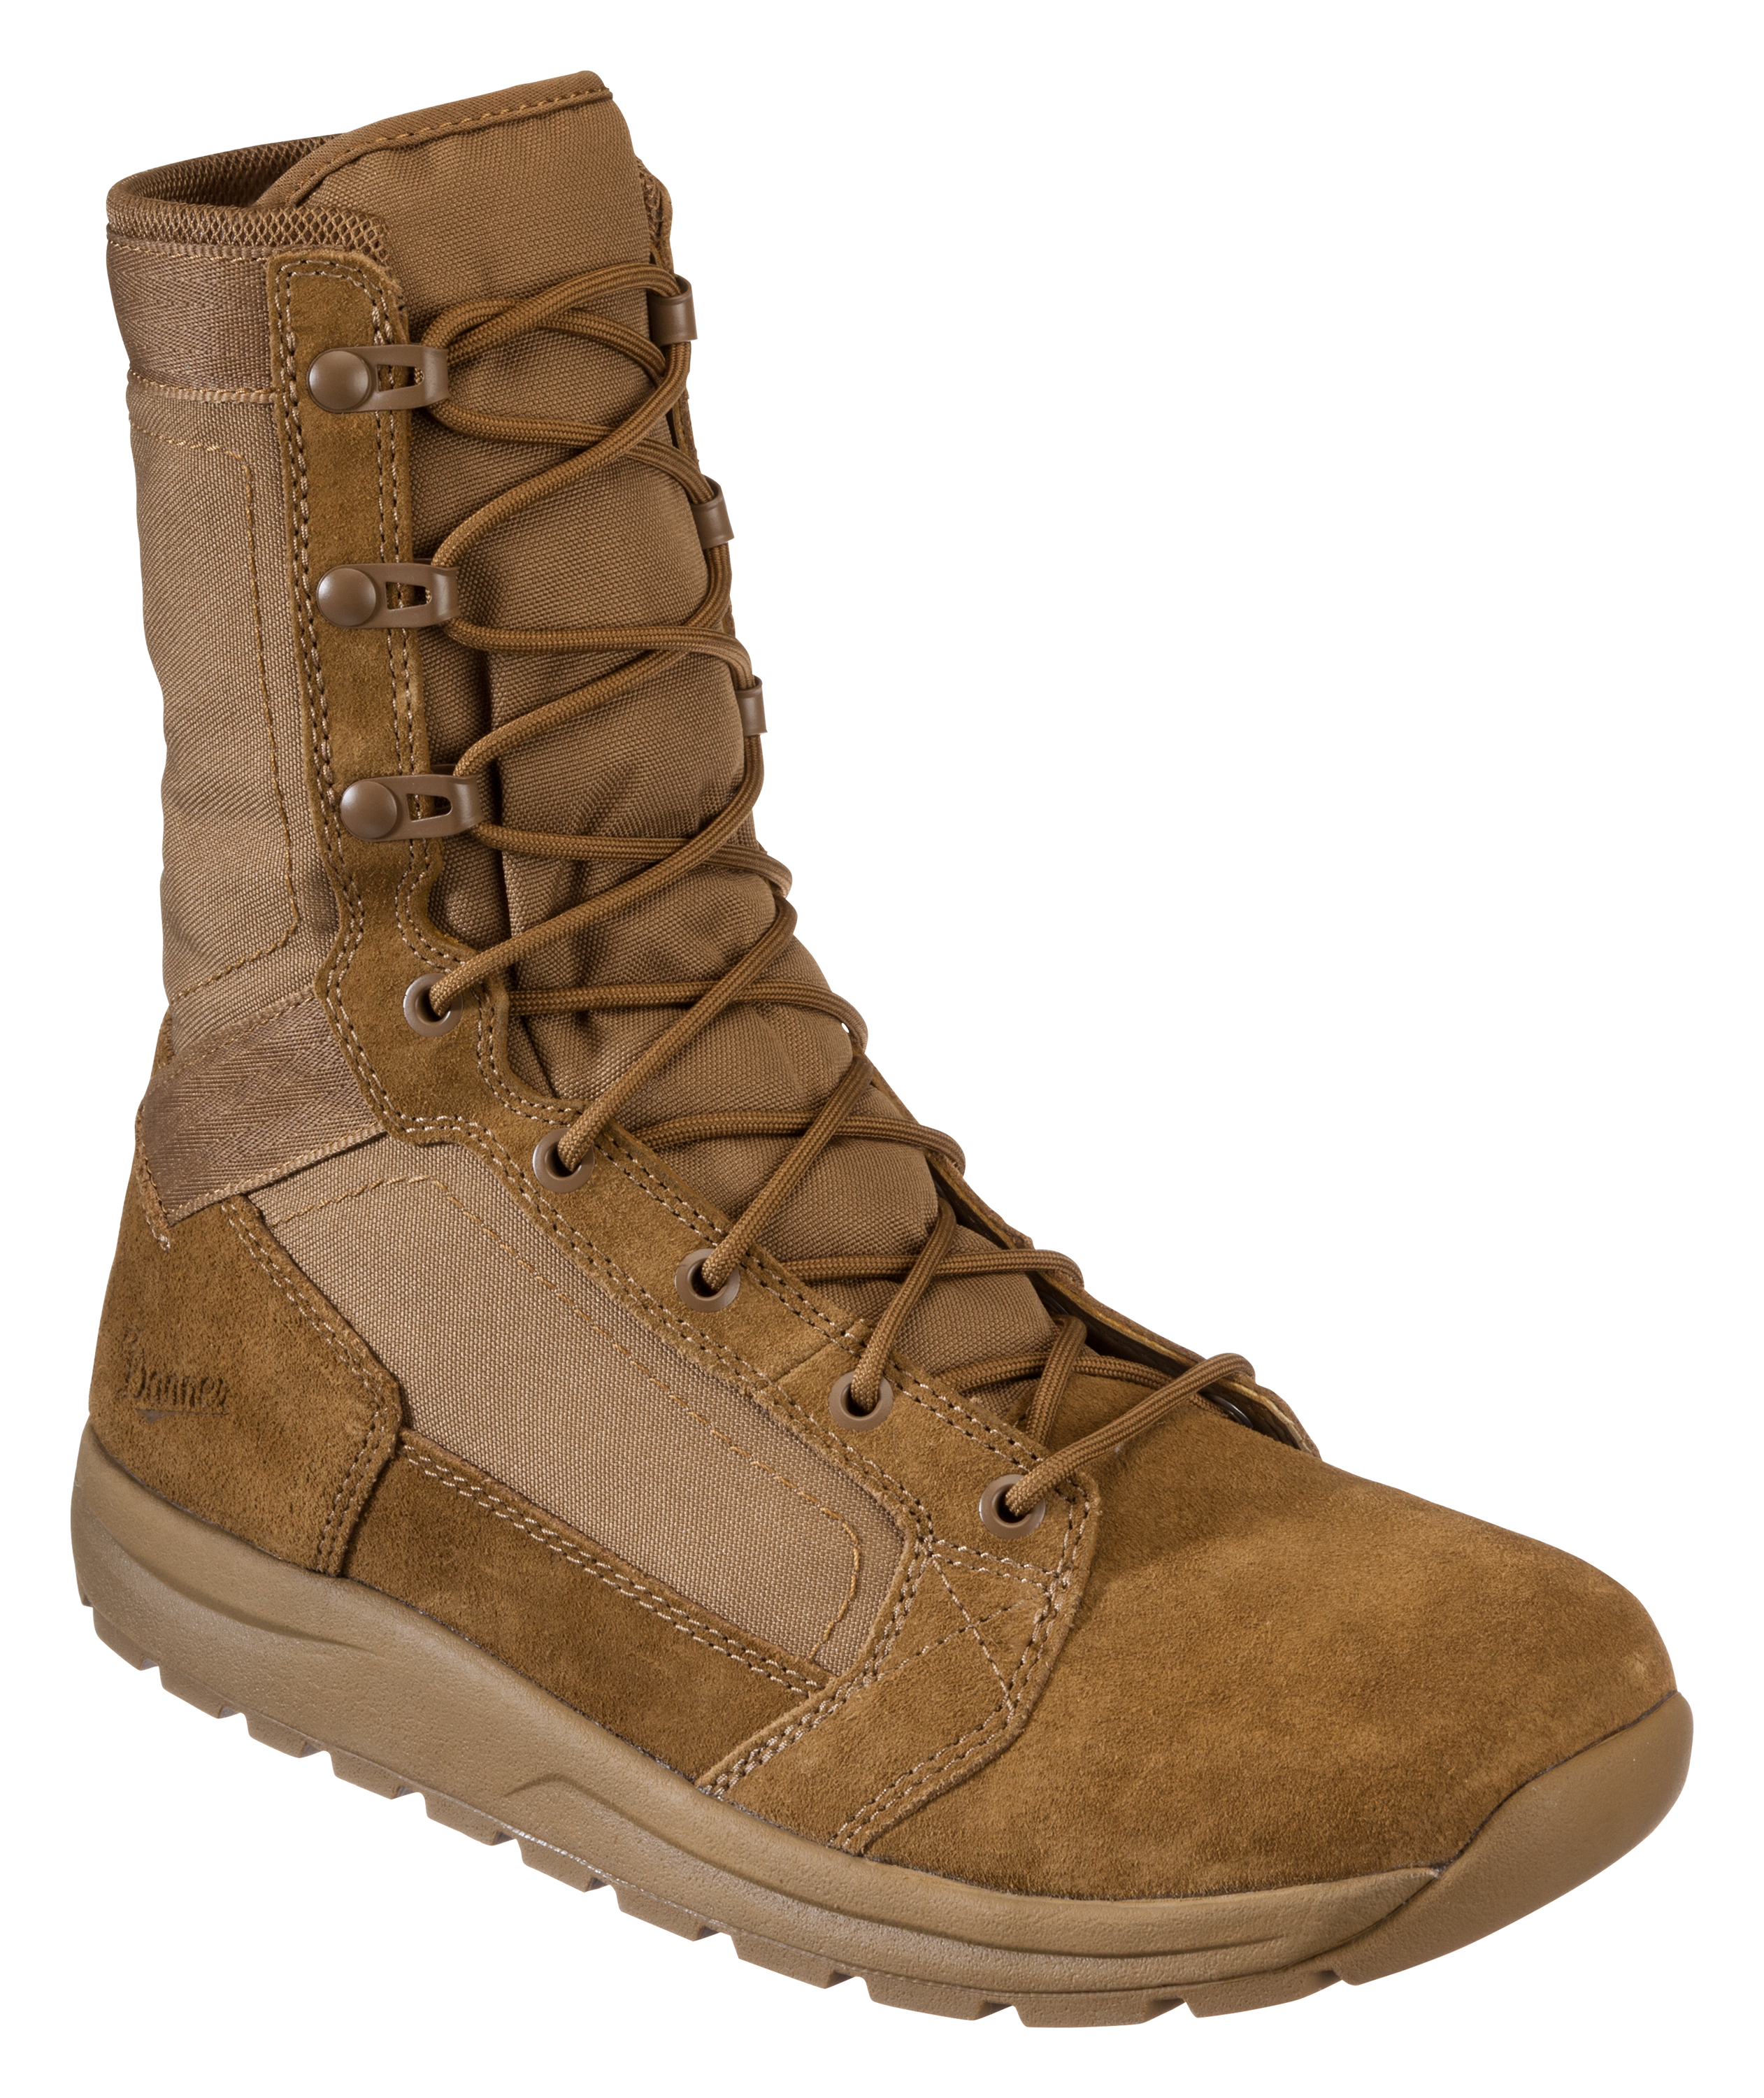 Danner Tachyon Tactical Boots for Men - Coyote - 9M